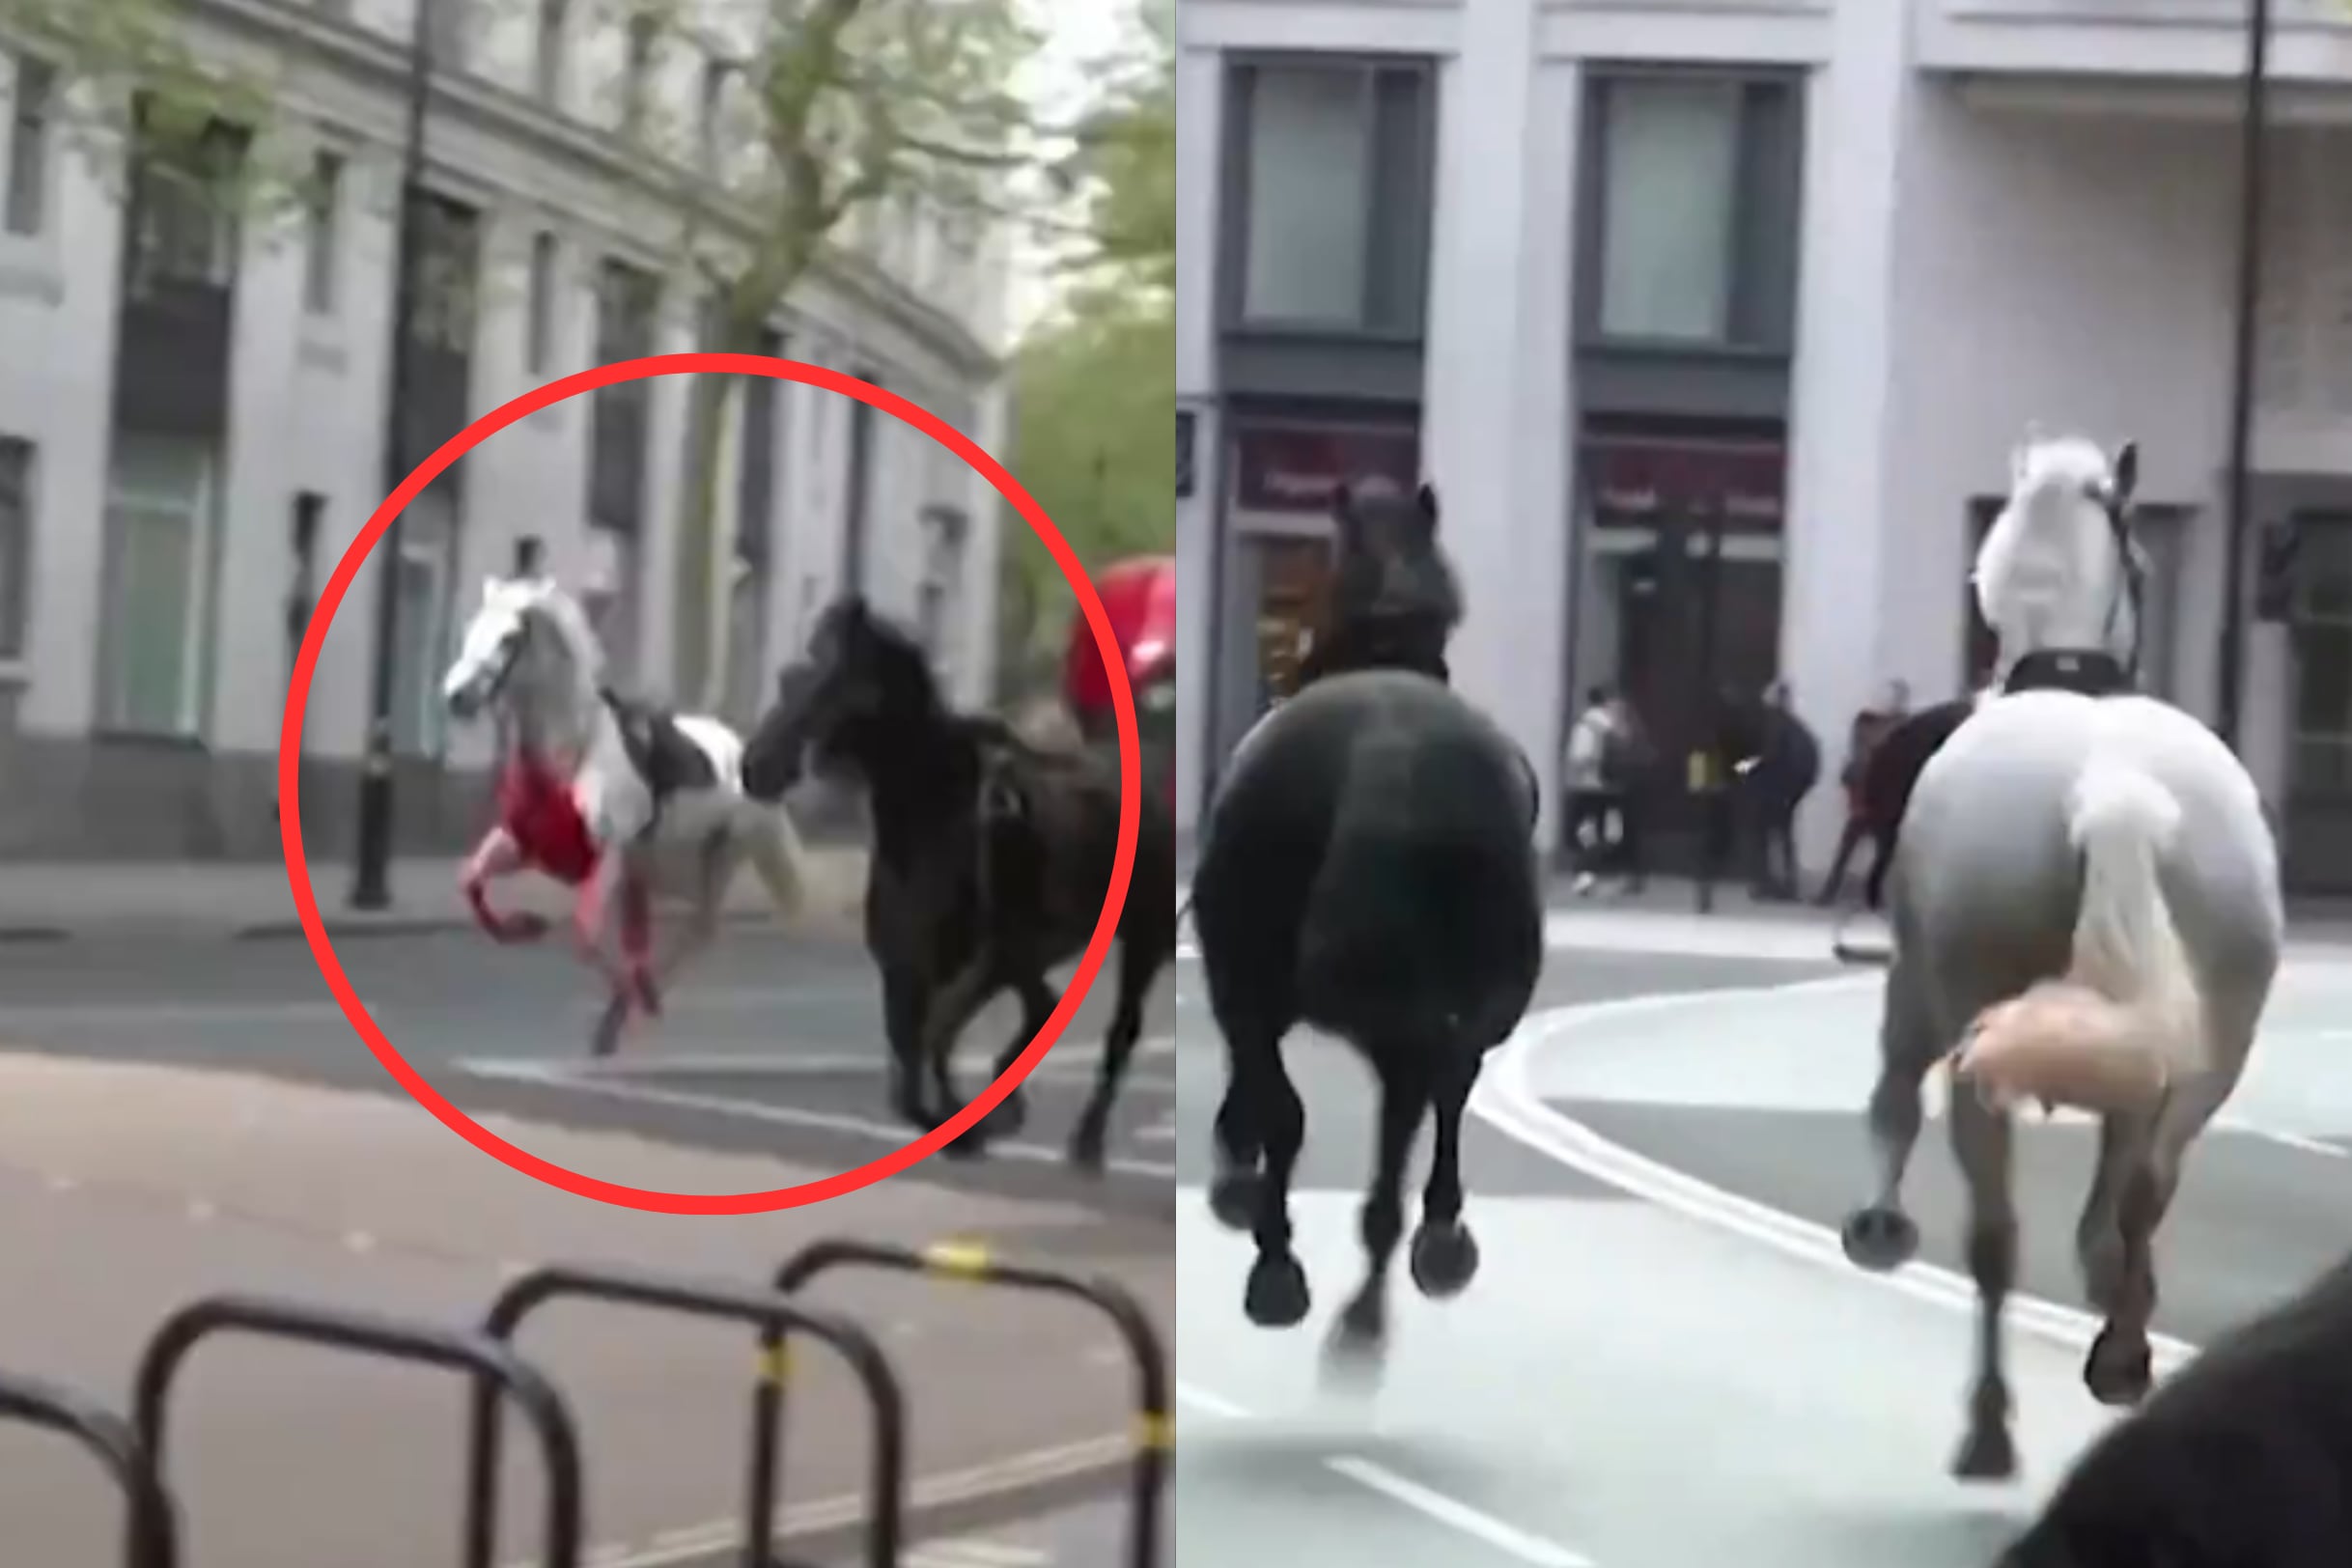 video: caballos militares, uno de ellos cubierto de sangre, corren alrededor de londres dejando multiples heridos